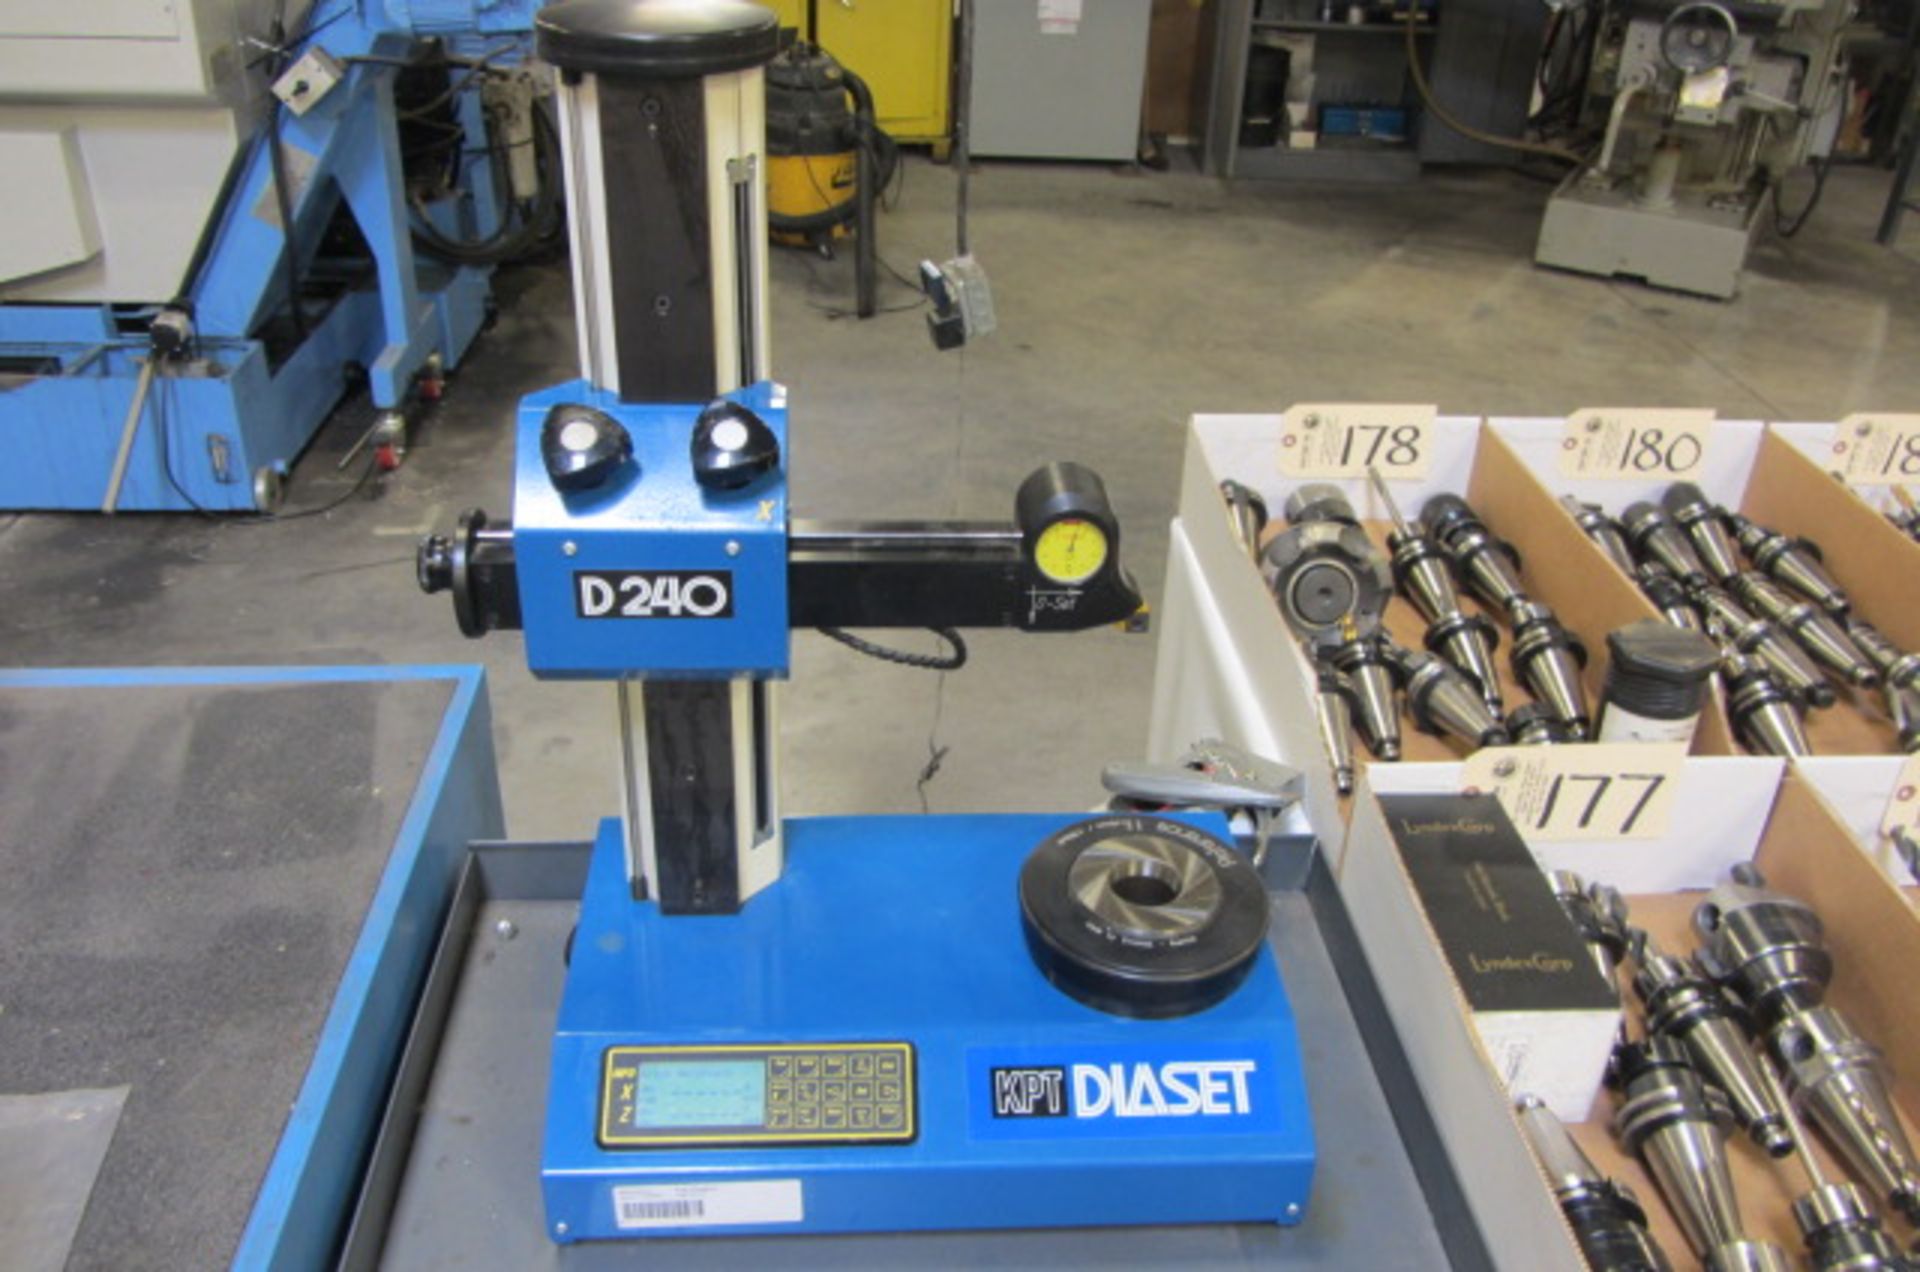 KPT Diaset Model D240 40 Taper Tool Presetter with 2-Axis Digital Controls, 2D Control Gauge